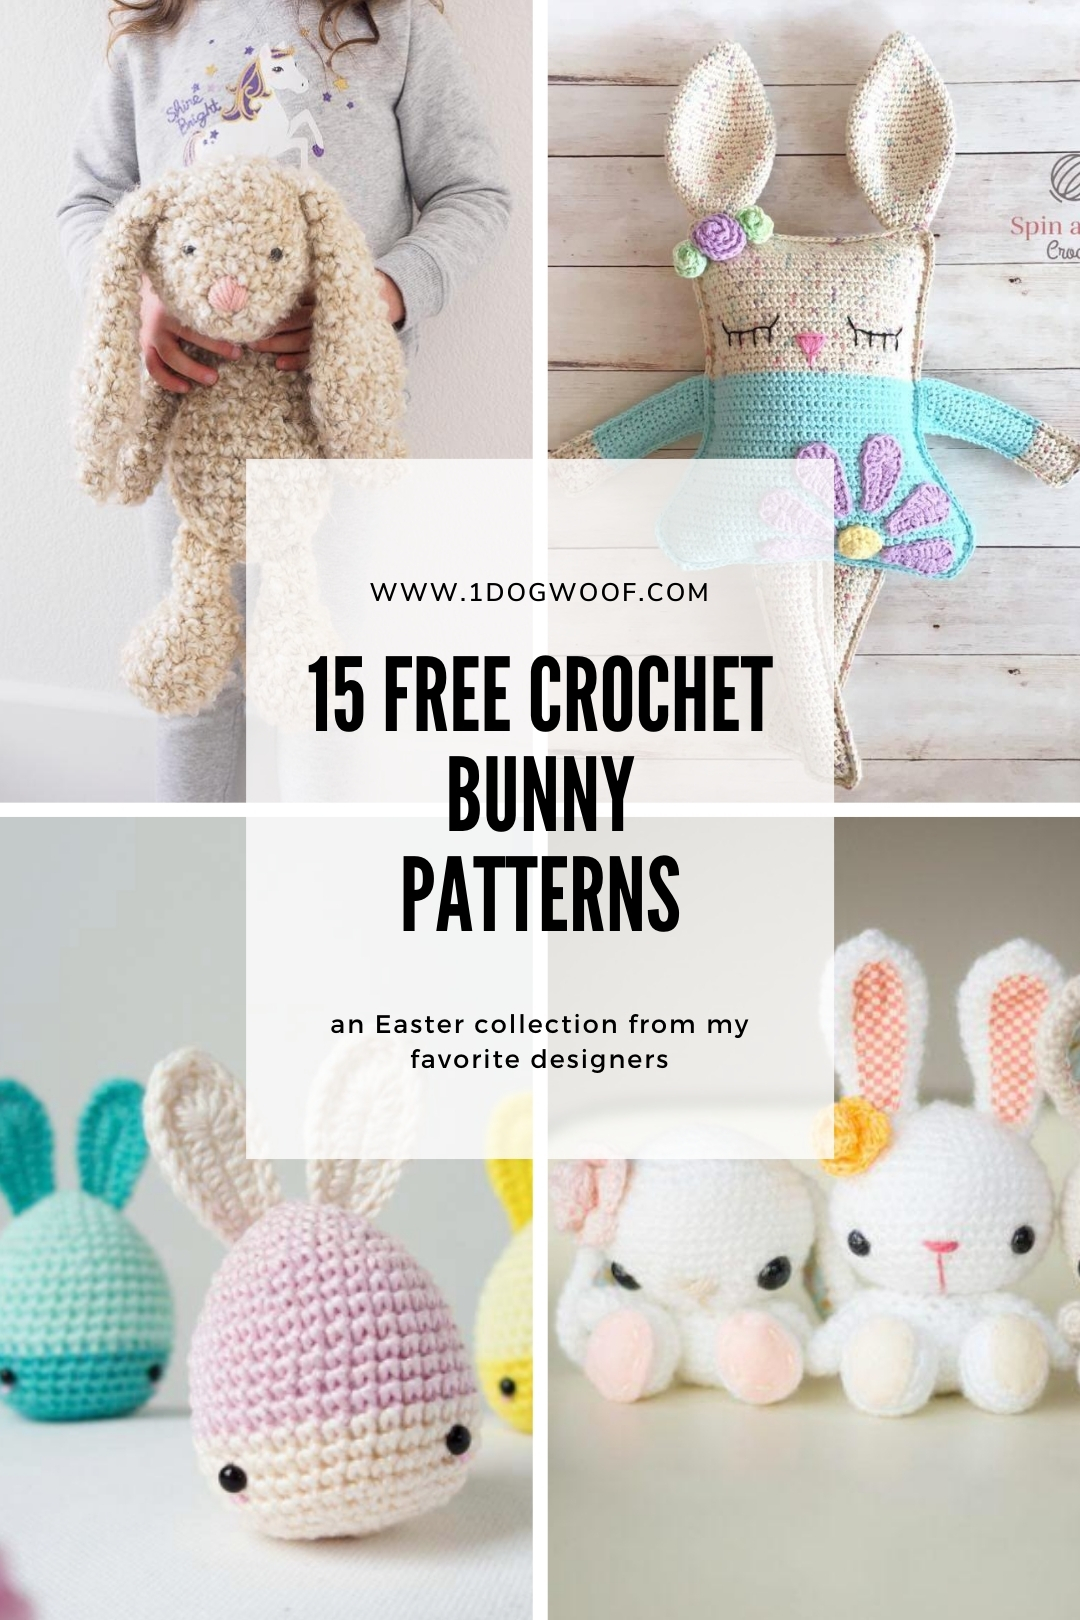 amigurumi bunny tutorial toy rabbit pattern Rabbit crochet pattern crochet toy pattern easy crochet pattern